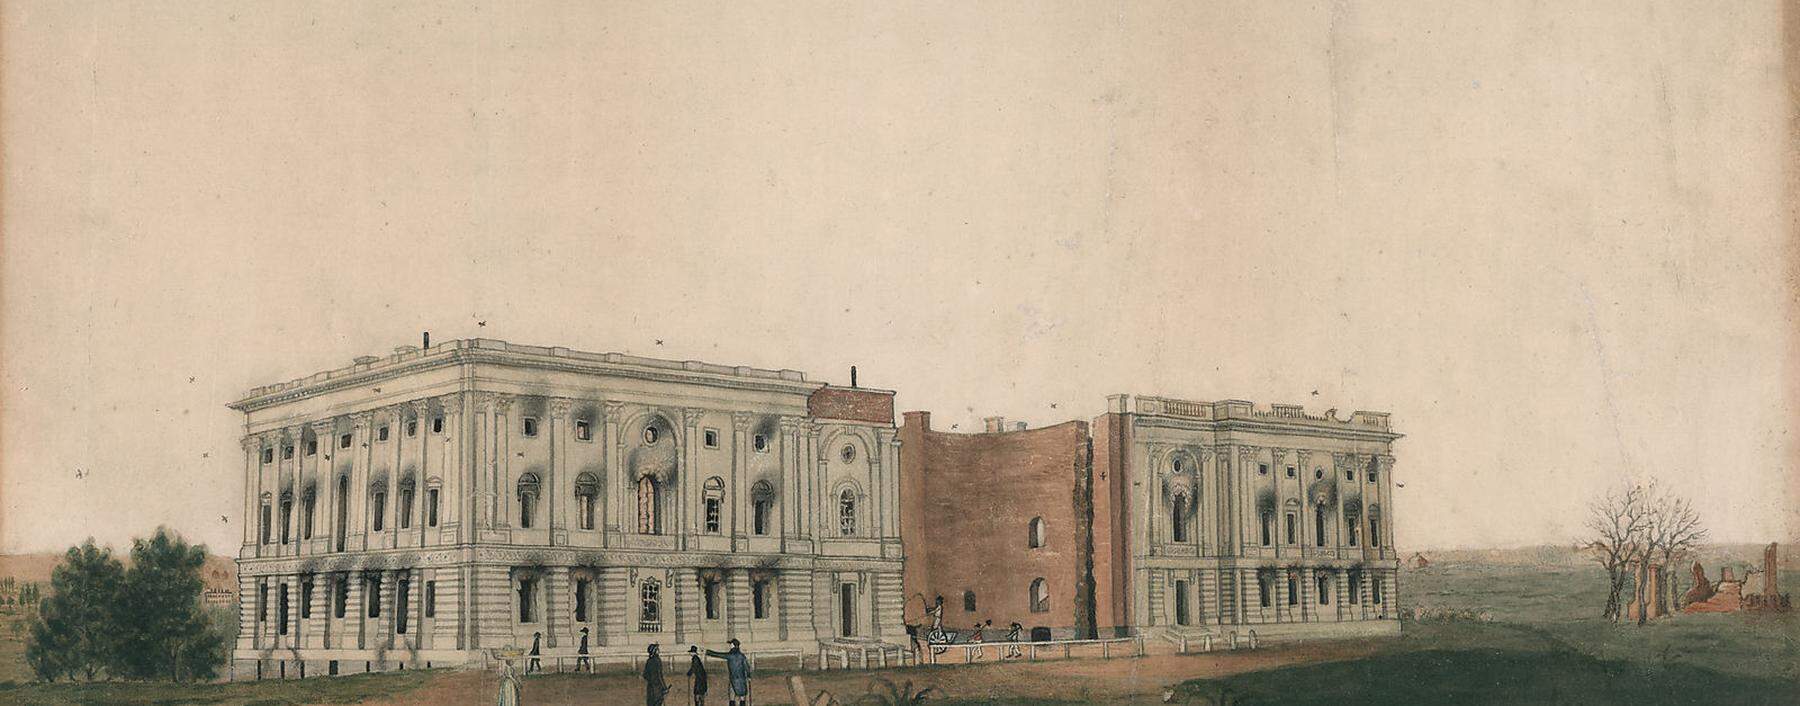 Das Kapitol in Washington nach dem verheerenden Brand im August 1814. Britische Truppen hatten ihn bei der Besetzung der US-Hauptstadt gelegt.